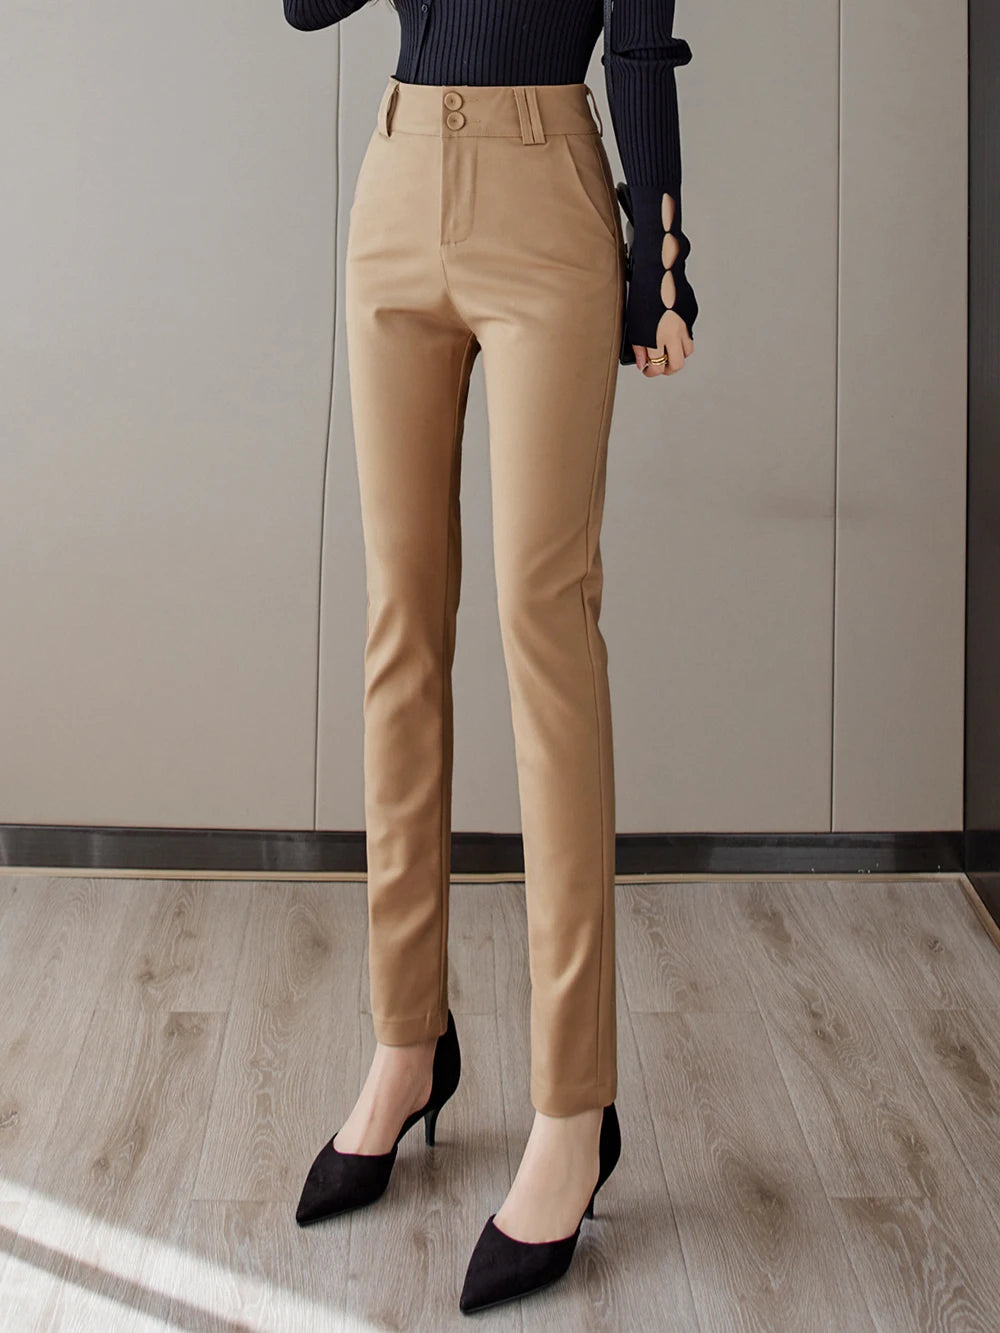 Women's Cotton High Waist Zipper Fly Closure Solid Pattern Pants